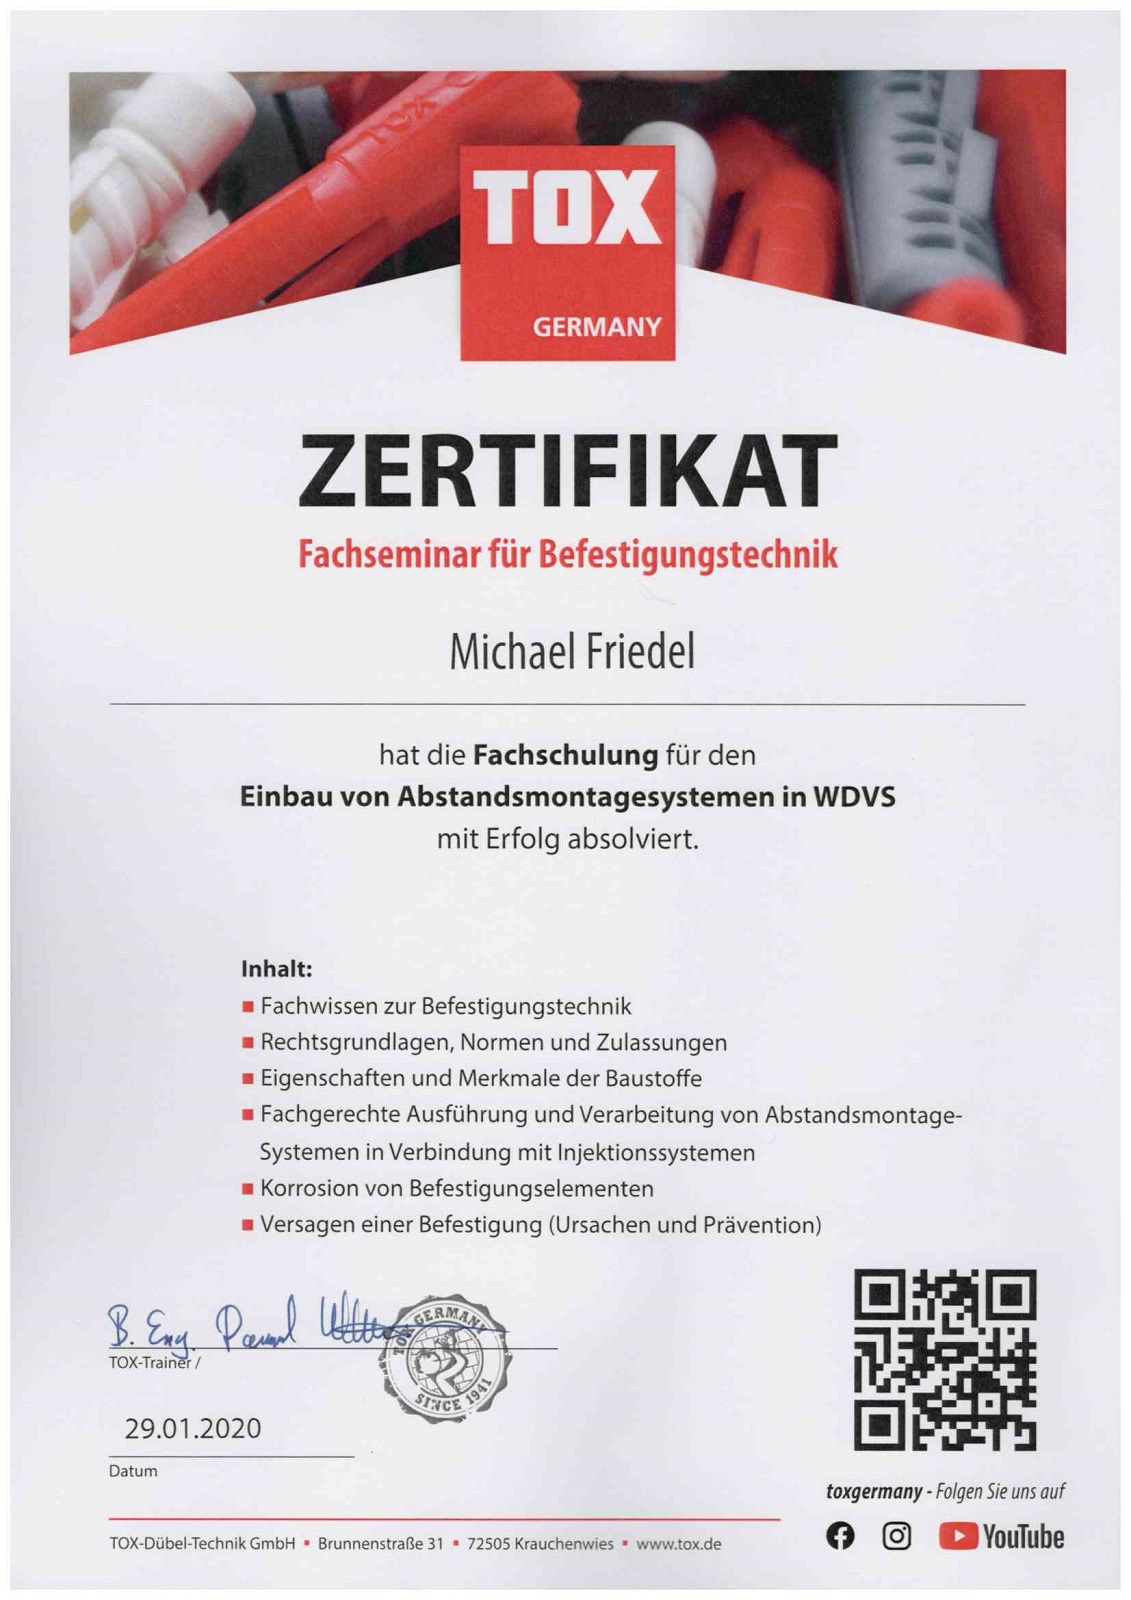 TOX Fachseminar für Befestigungstechnik Zertifikat 2020